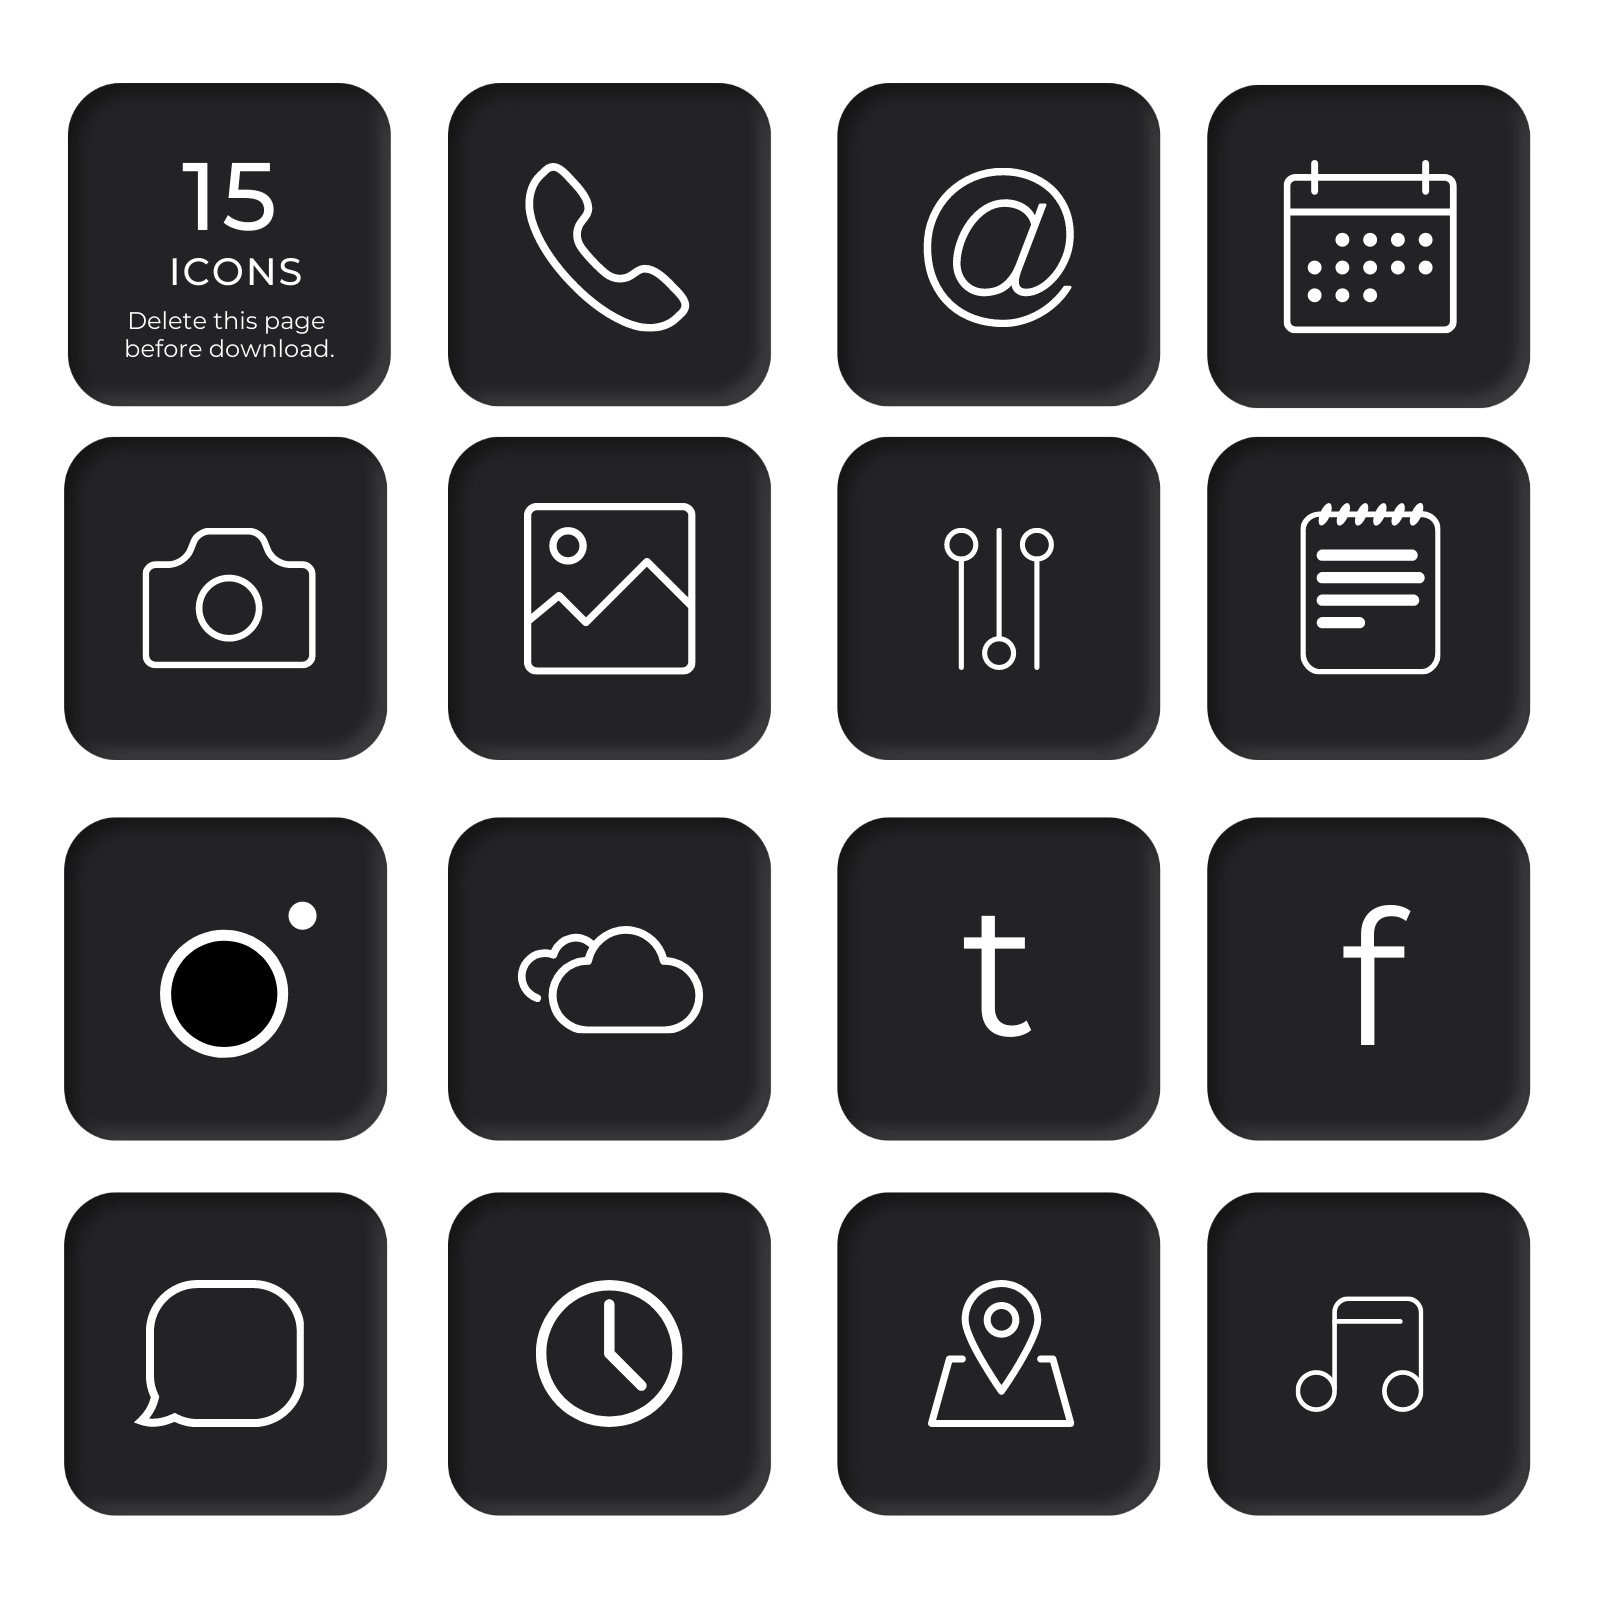 Mẫu biểu tượng iOS tùy chỉnh và miễn phí cho ứng dụng Xcode trên nền trắng giúp tiết kiệm thời gian cho các nhà phát triển. Hình ảnh này sẽ giúp bạn hiểu rõ hơn về cách sử dụng mẫu biểu tượng tùy chỉnh và tạo ra biểu tượng với nền trắng để thu hút khách hàng sử dụng ứng dụng.